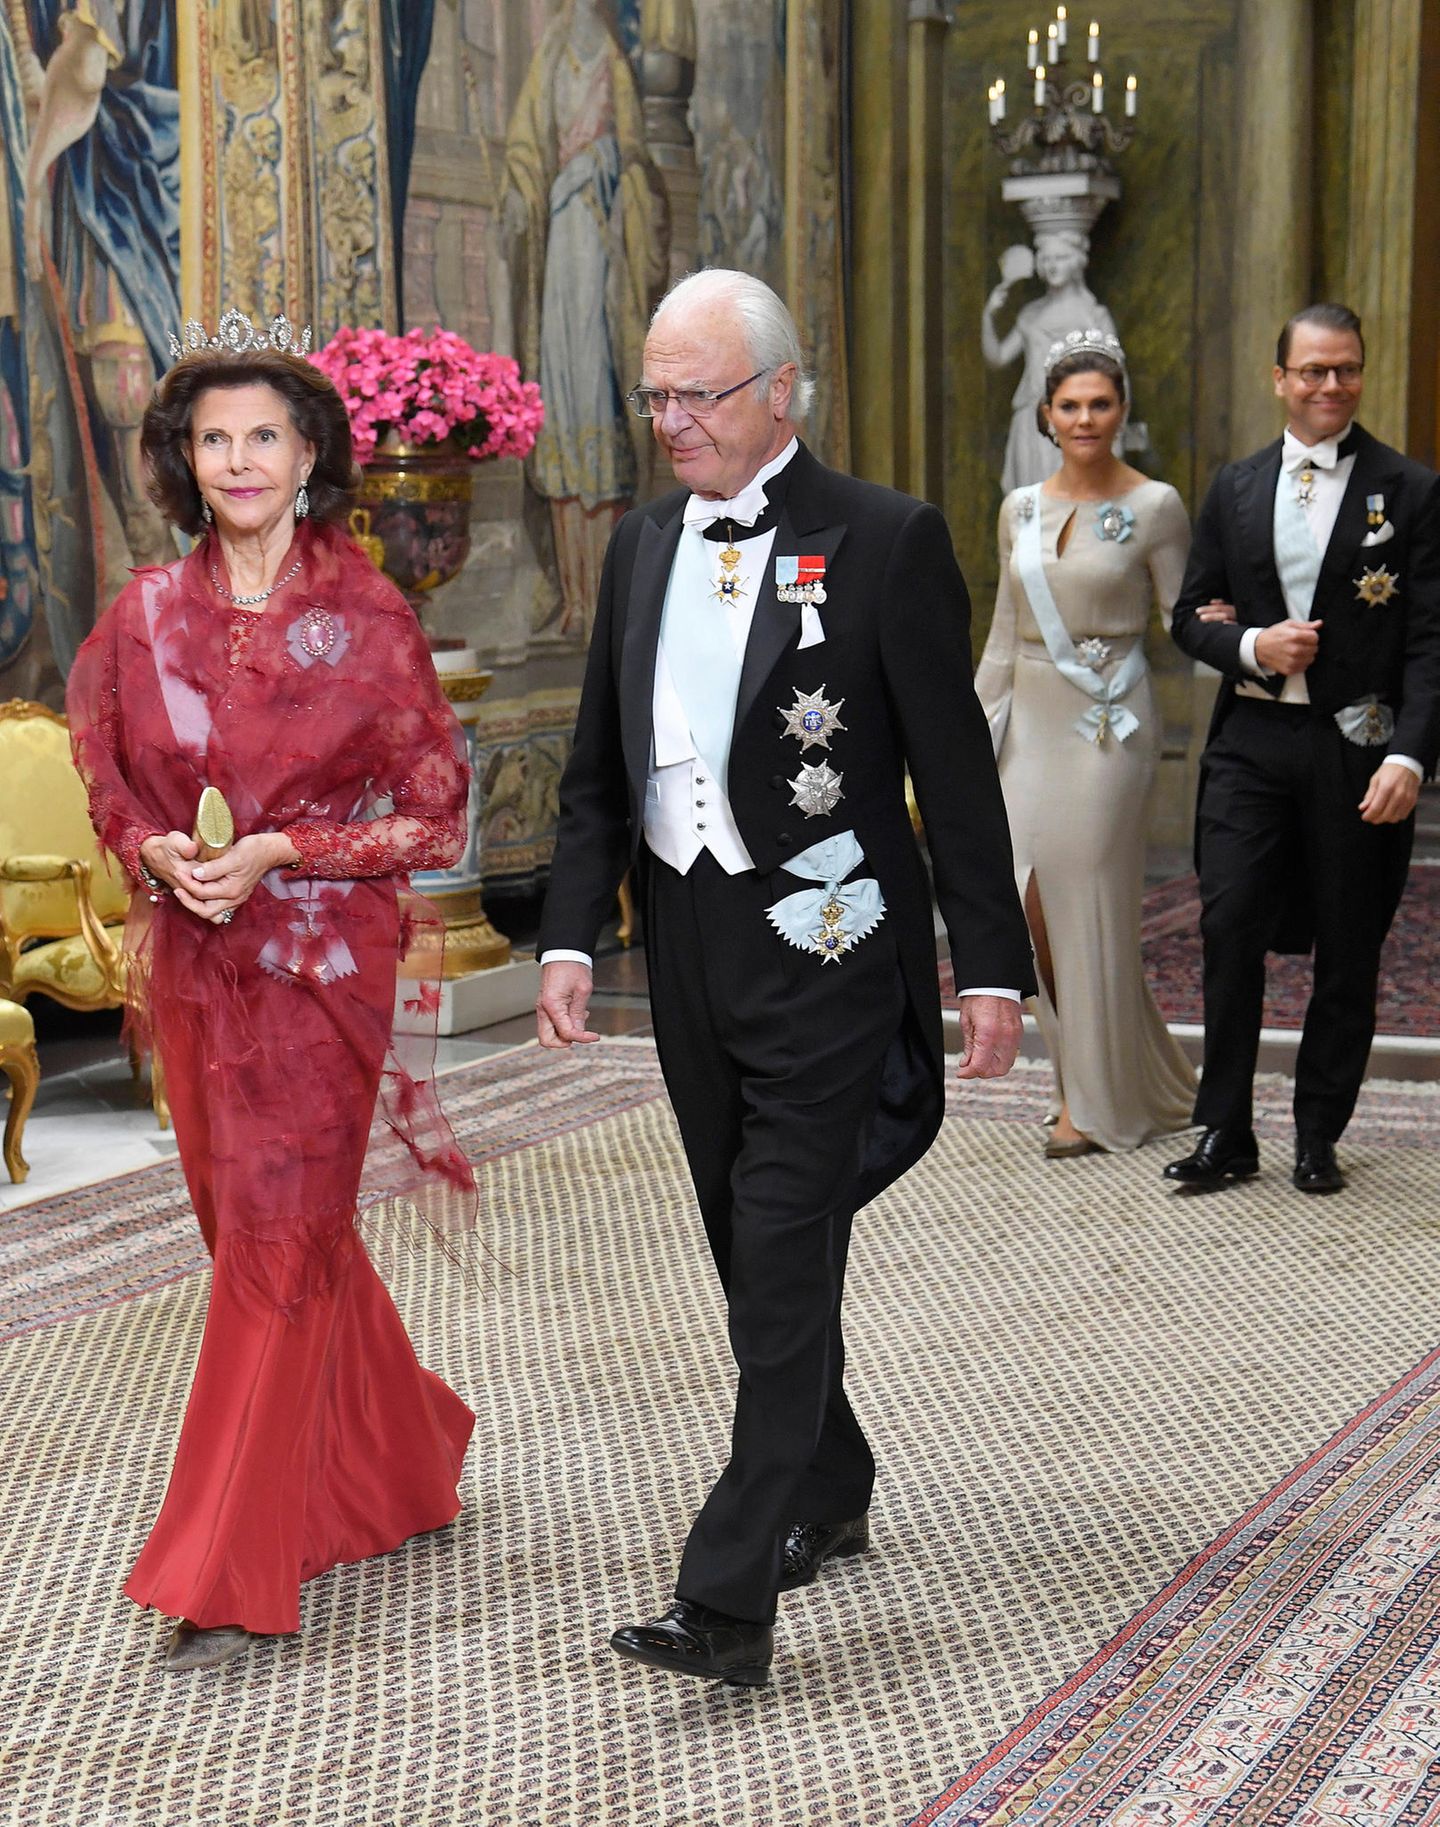 Skandinavien-Royals: 12. November 2019 Am Dienstagabend lädt die schwedische Königsfamilie zu einem repräsentativen Abendessen ins Stockholmer Schloss. König Silvia schreitet an der Seite von König Carl Gustaf voran, gefolgt vom Kronprinzenpaar.